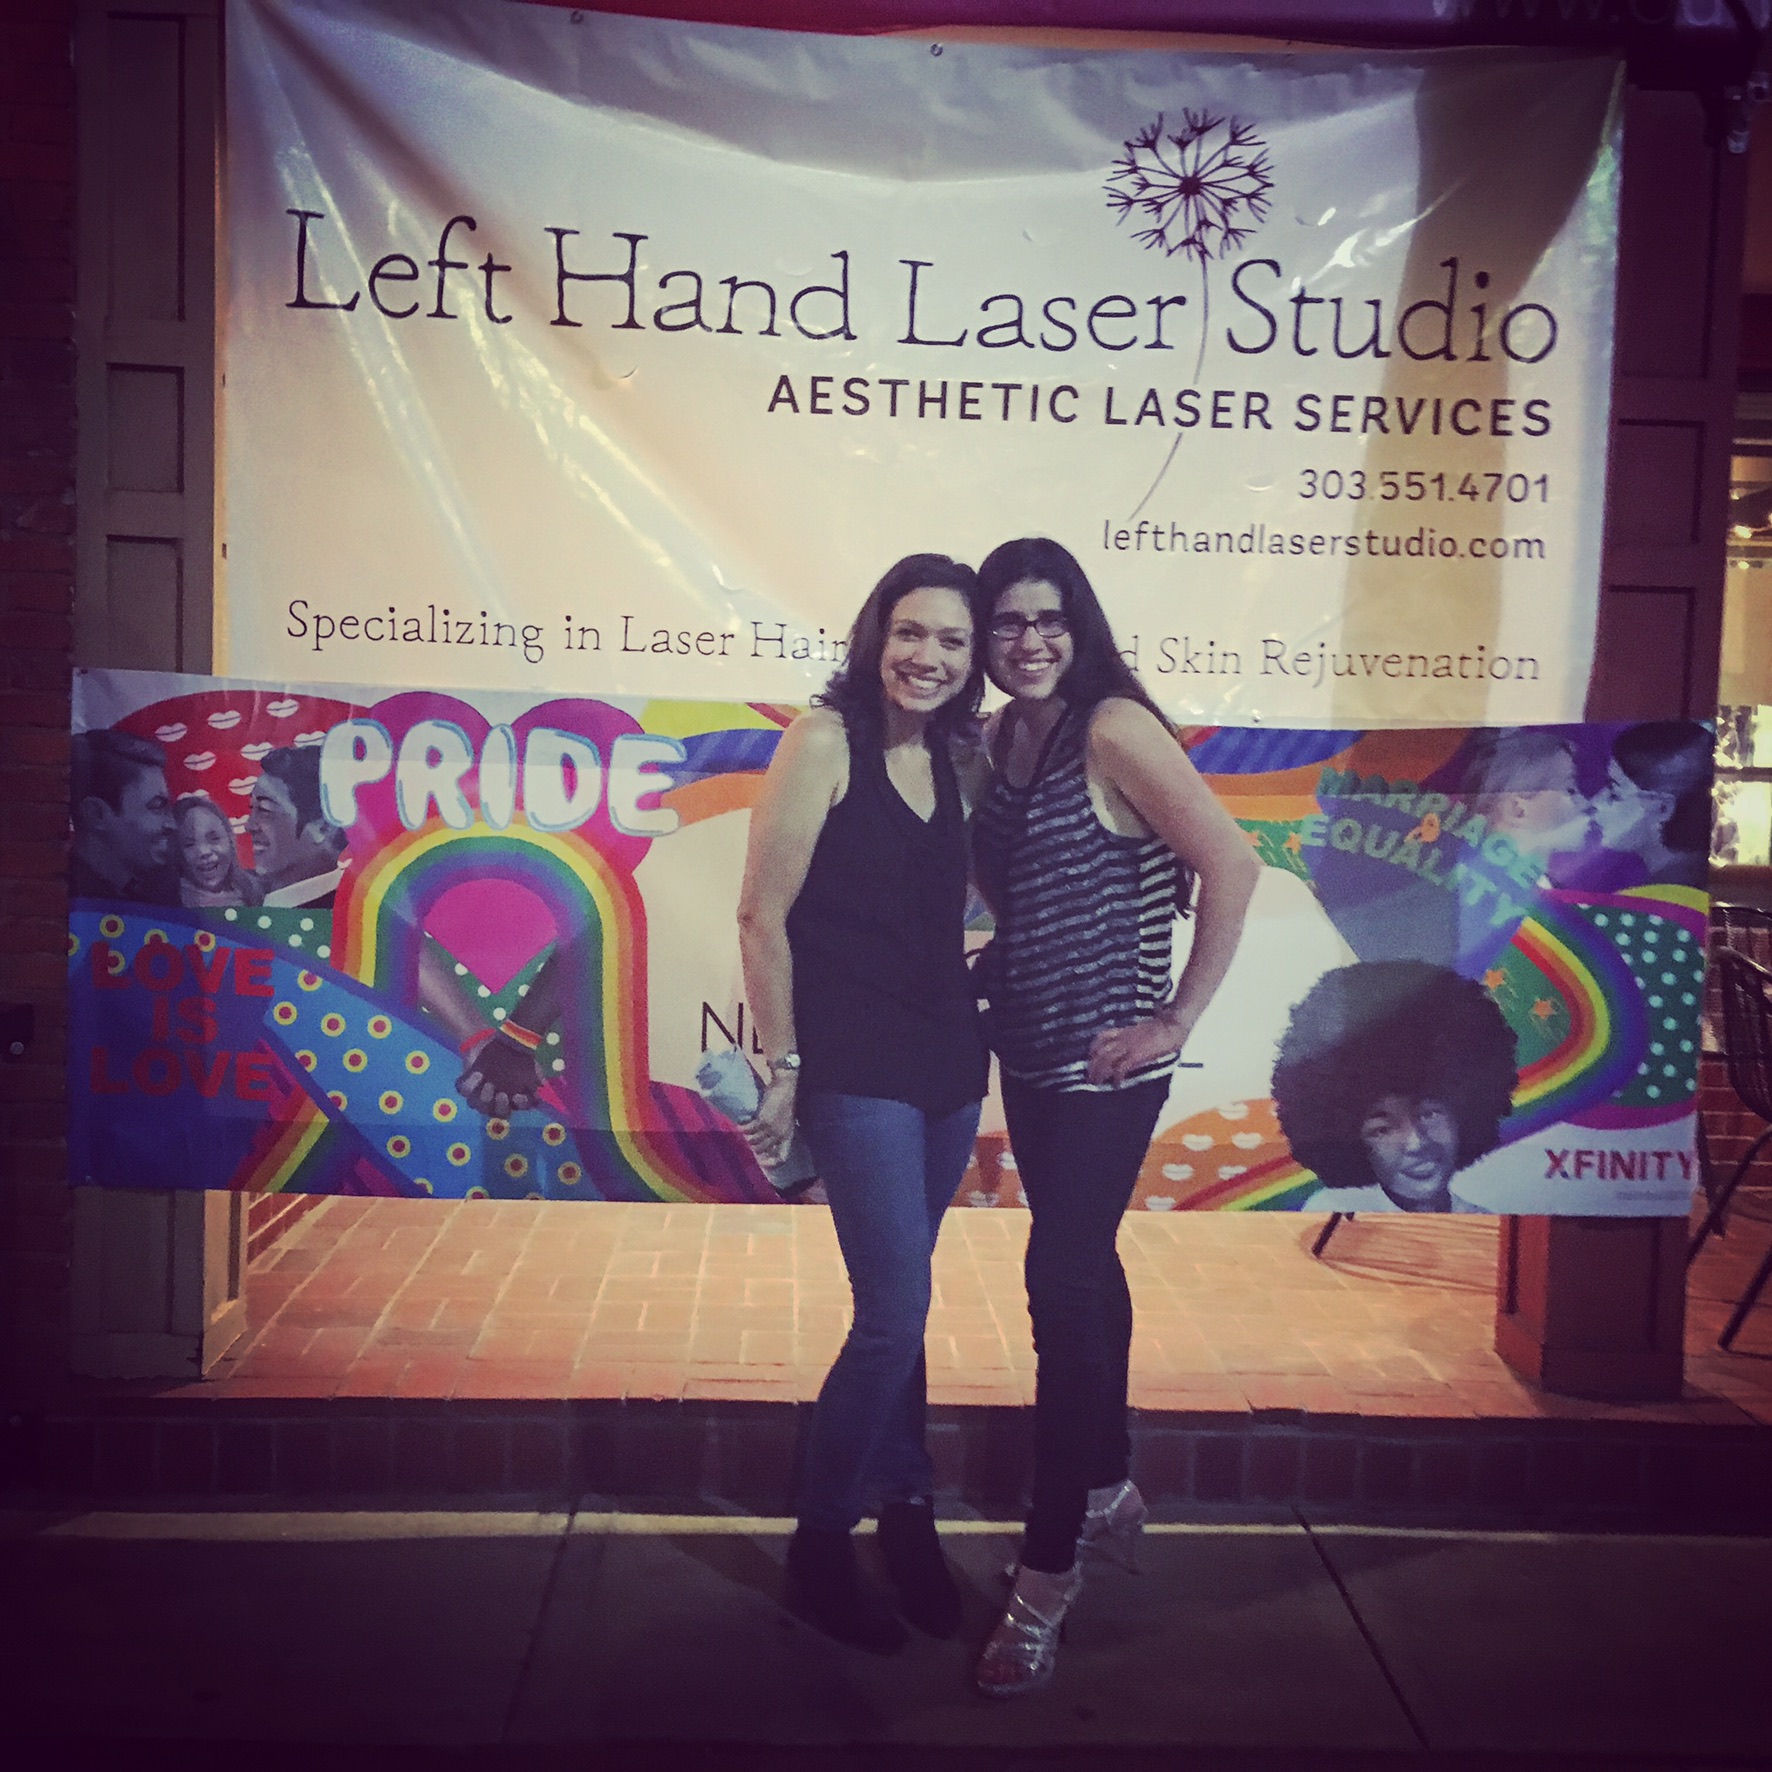 Left Hand Laser Studio